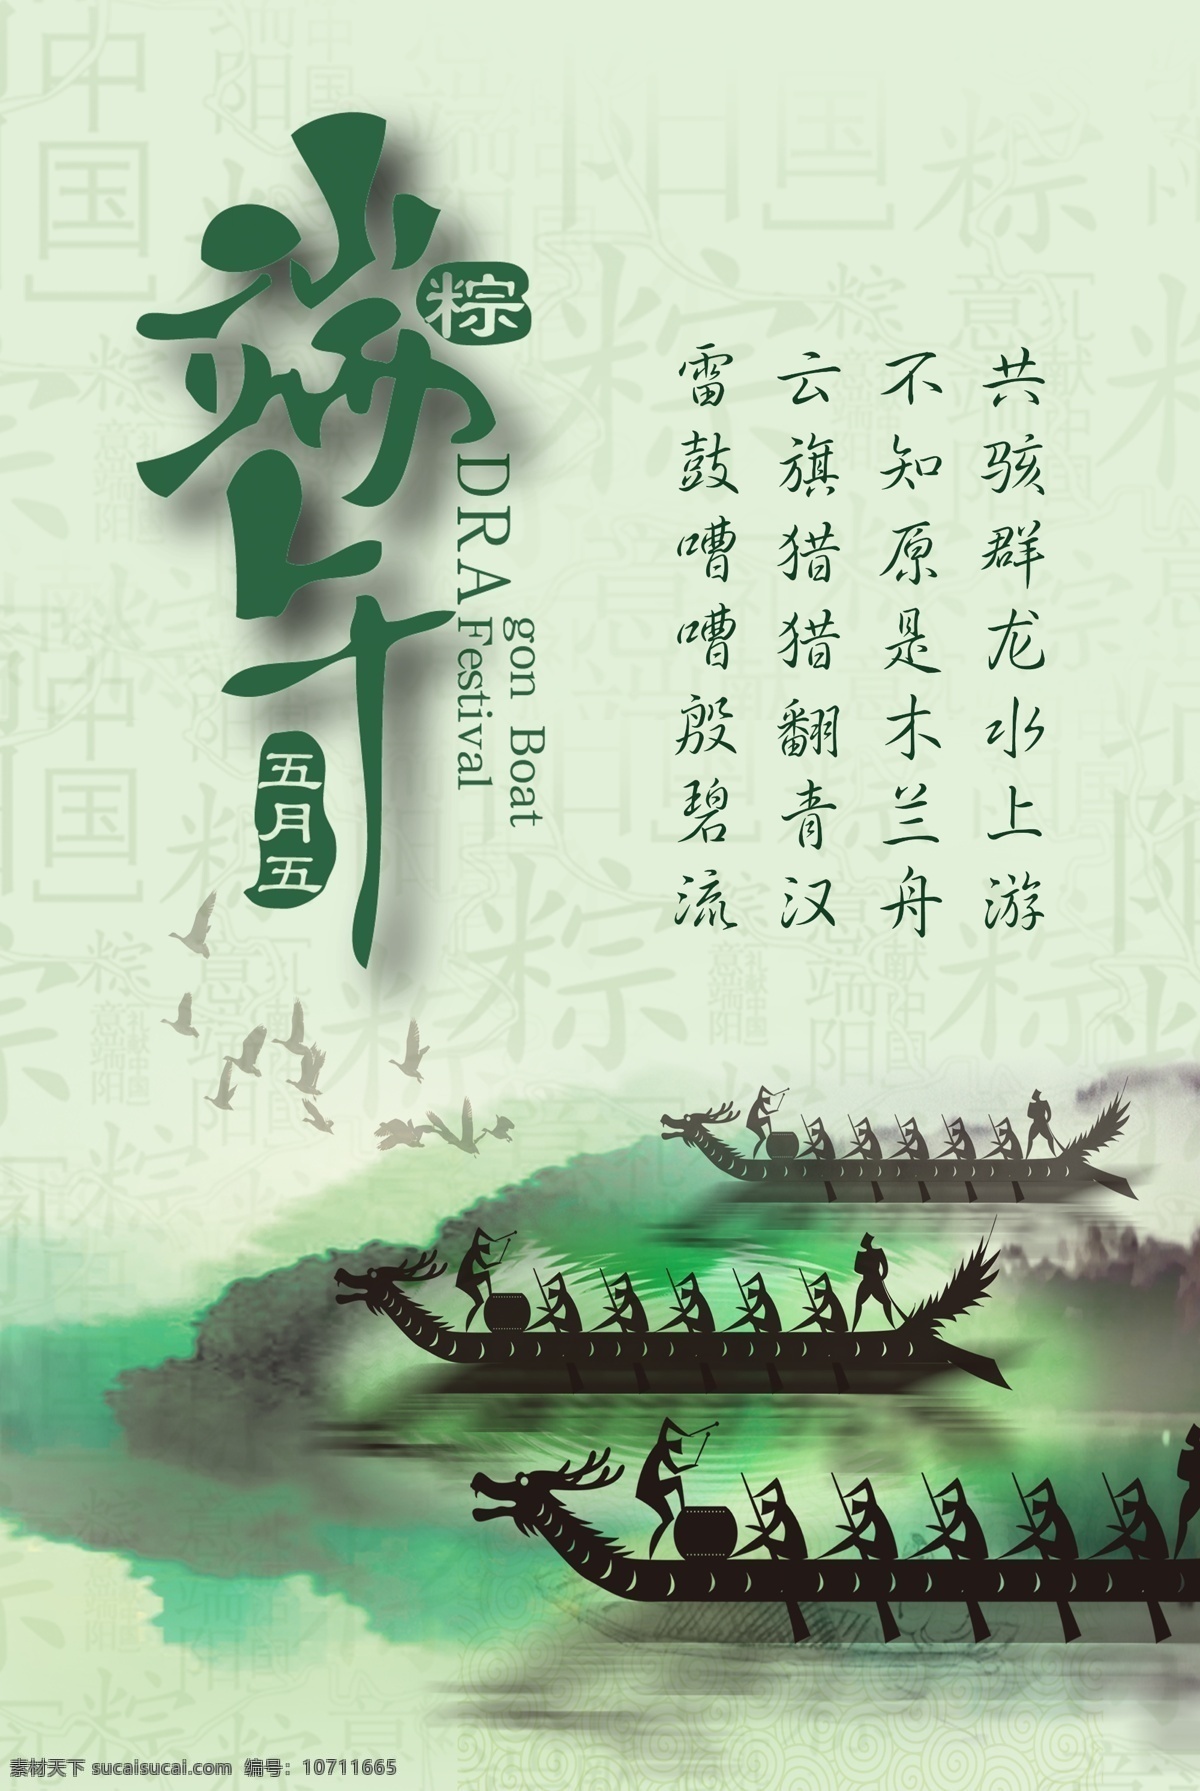 端午节海报 端午节 中国风 水墨画 诗词 文化艺术 传统文化